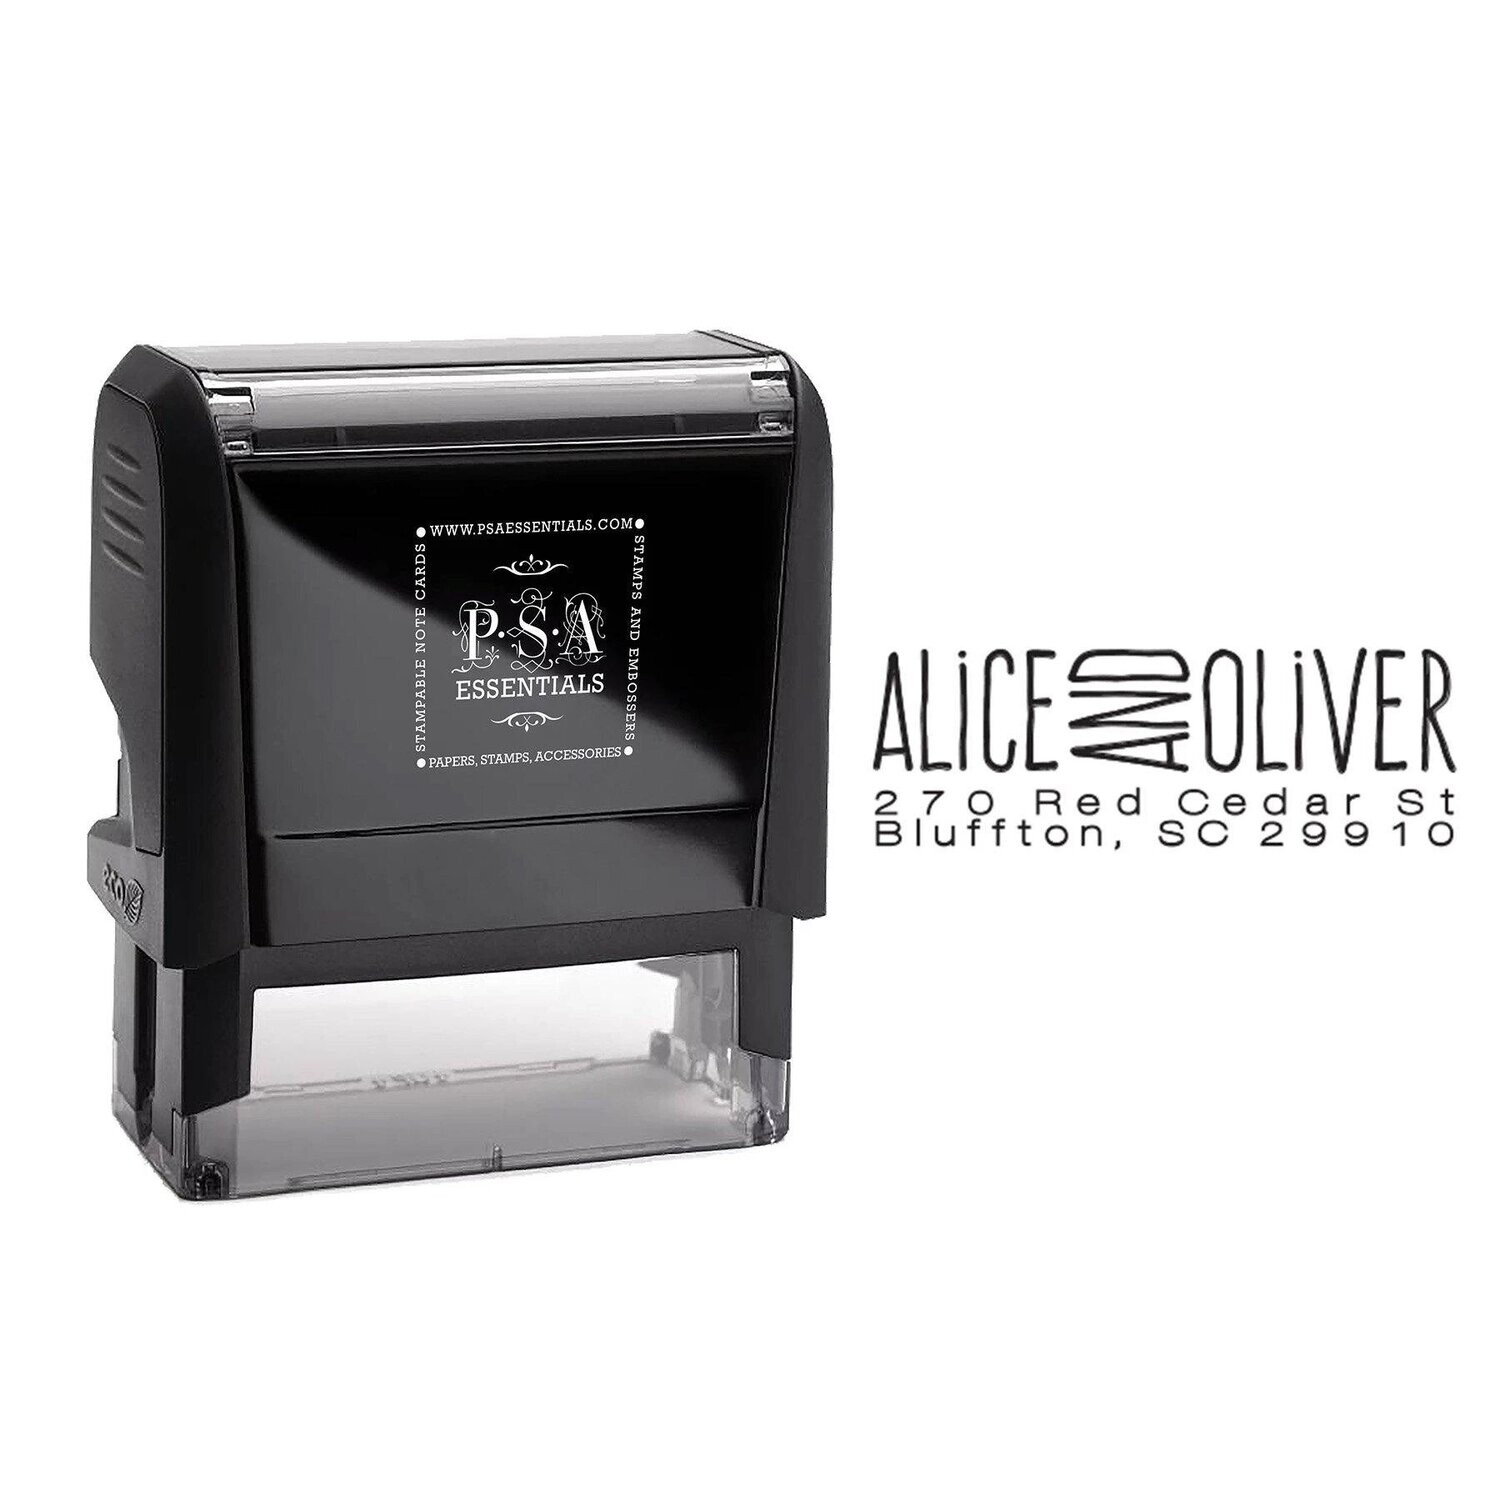 Alice Return Address Stamp